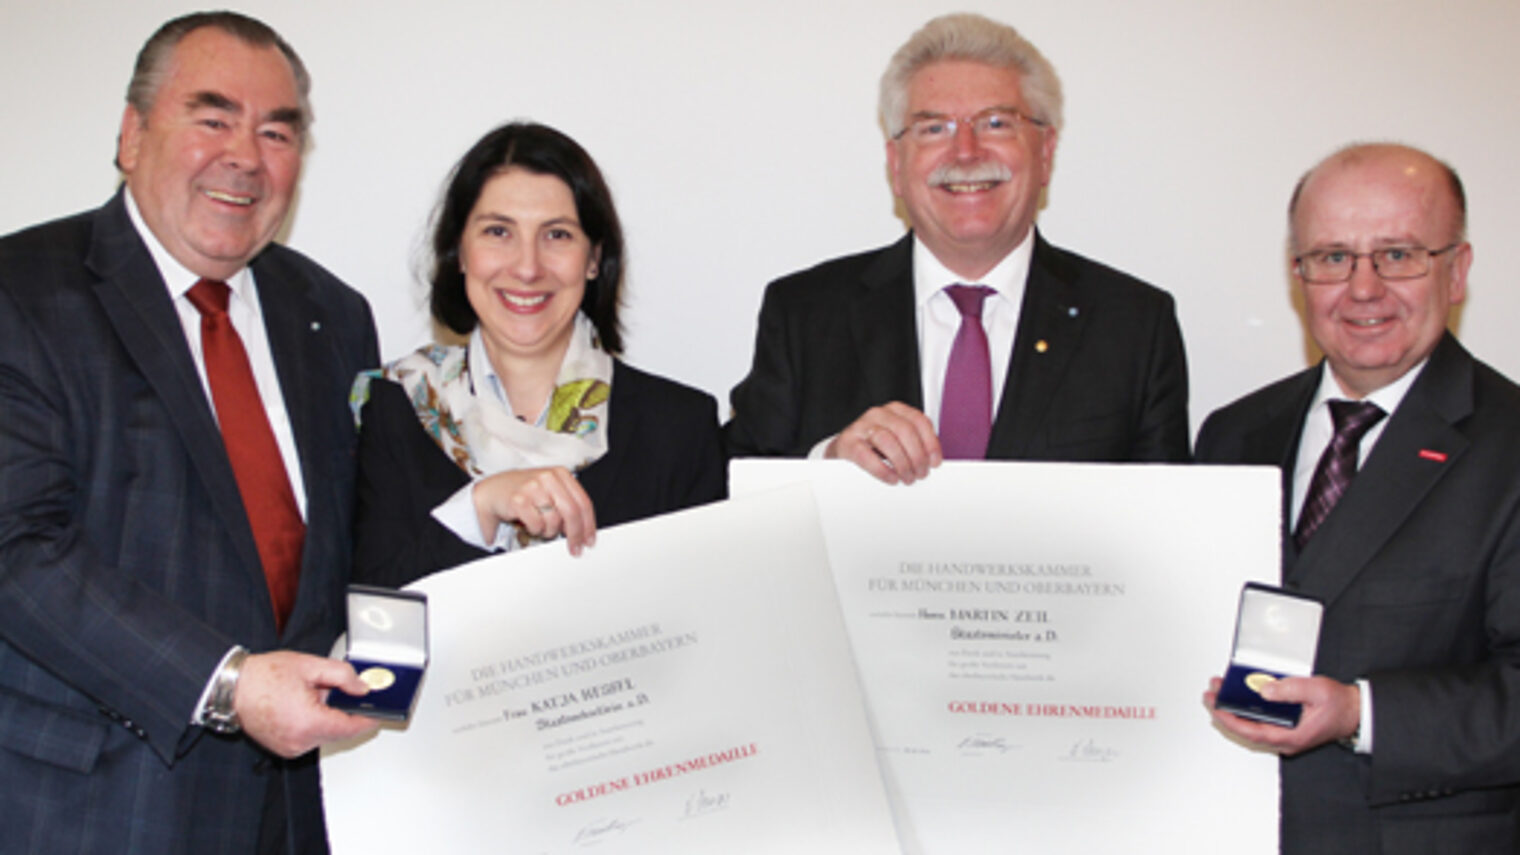 Martin Zeil (2.v.r.) und Katja Hessel (2.v.l.) wurden von Kammerpräsident Heinrich Traublinger (links) und Hauptgeschäftsführer Dr. Lothar Semper mit der Goldenen Ehrenmedaille der Handwerkskammer geehrt.